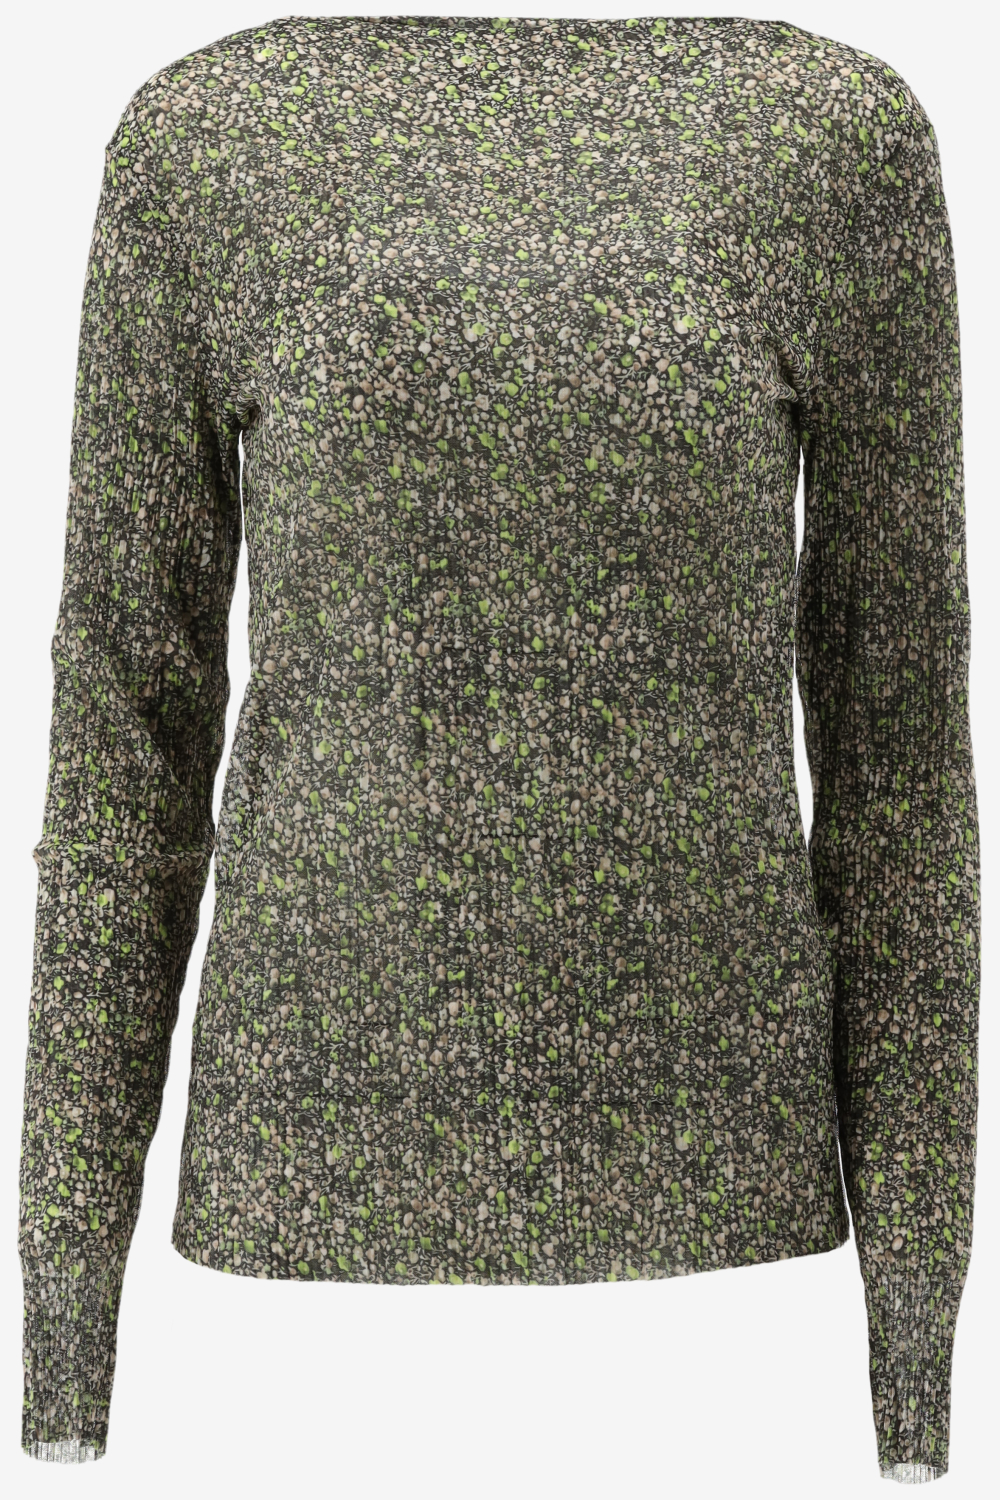 Catwalk Junkie Ls Moss Flowers Tops & T-shirts Dames - Shirt - Groen - Maat XS